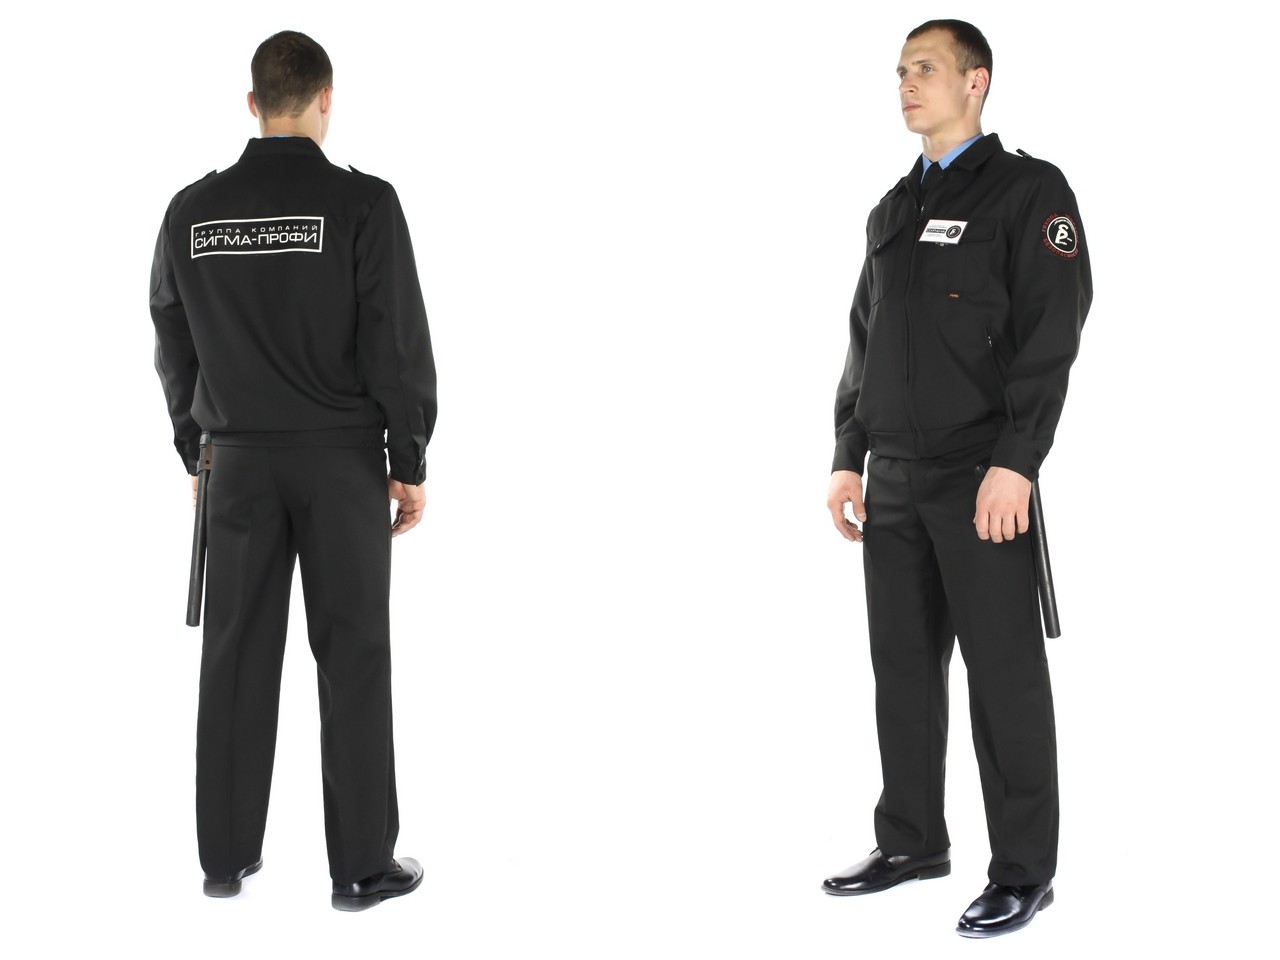 Форма одежды для охранников